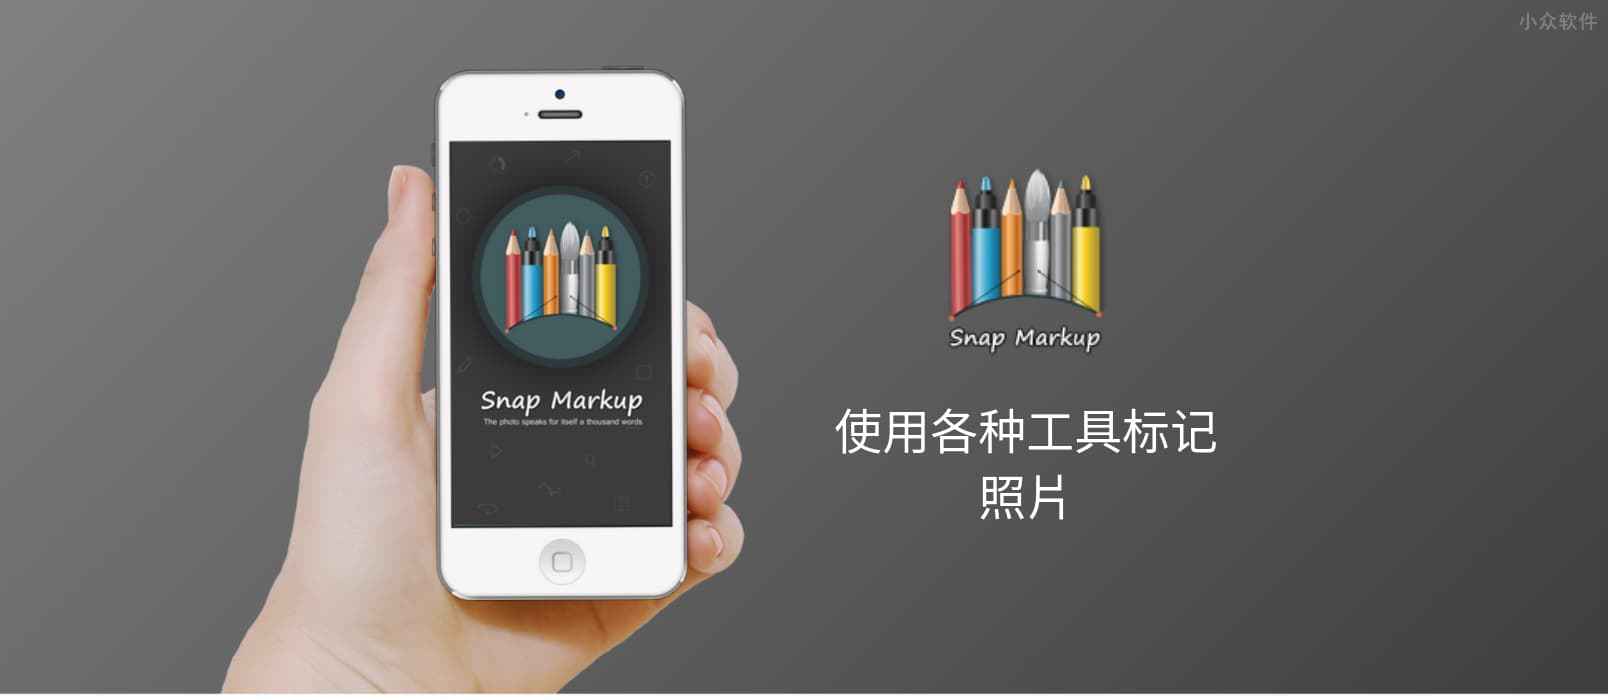 Snap Markup – 简单的图片标记应用[iOS 限免]